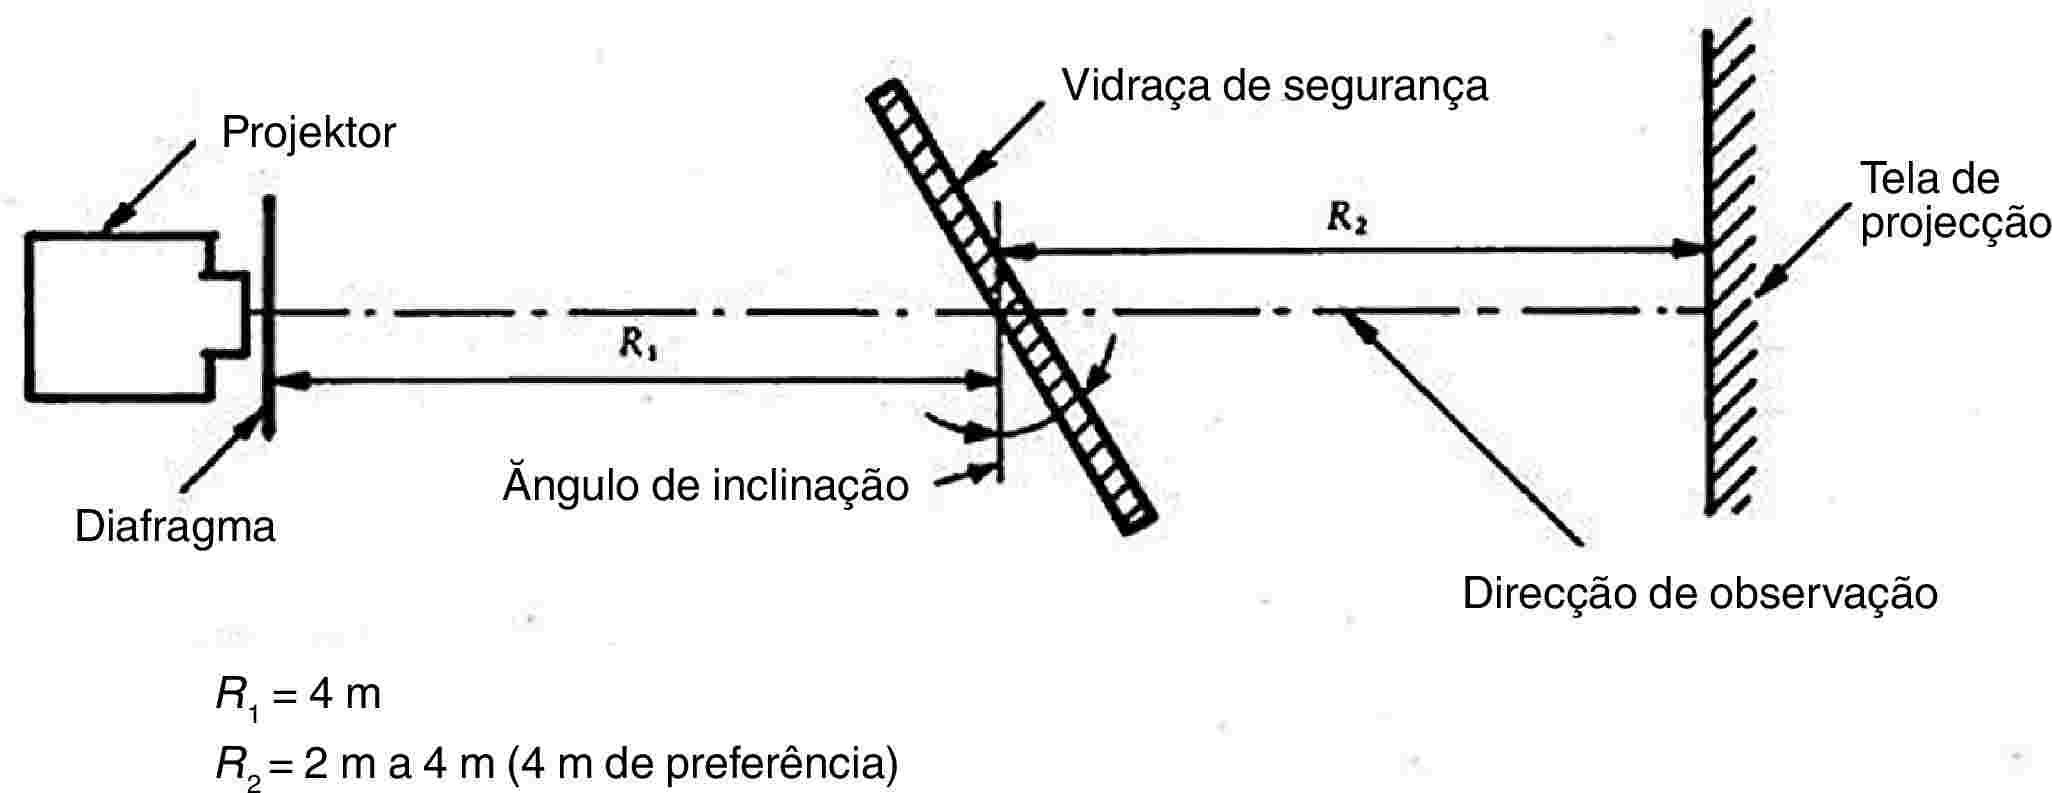 ProjektorVidraça de segurançaTela de projecçãoDiafragmaĂngulo de inclinaçãoDirecção de observaçãoR1 = 4 mR2 = 2 m a 4 m (4 m de preferência)